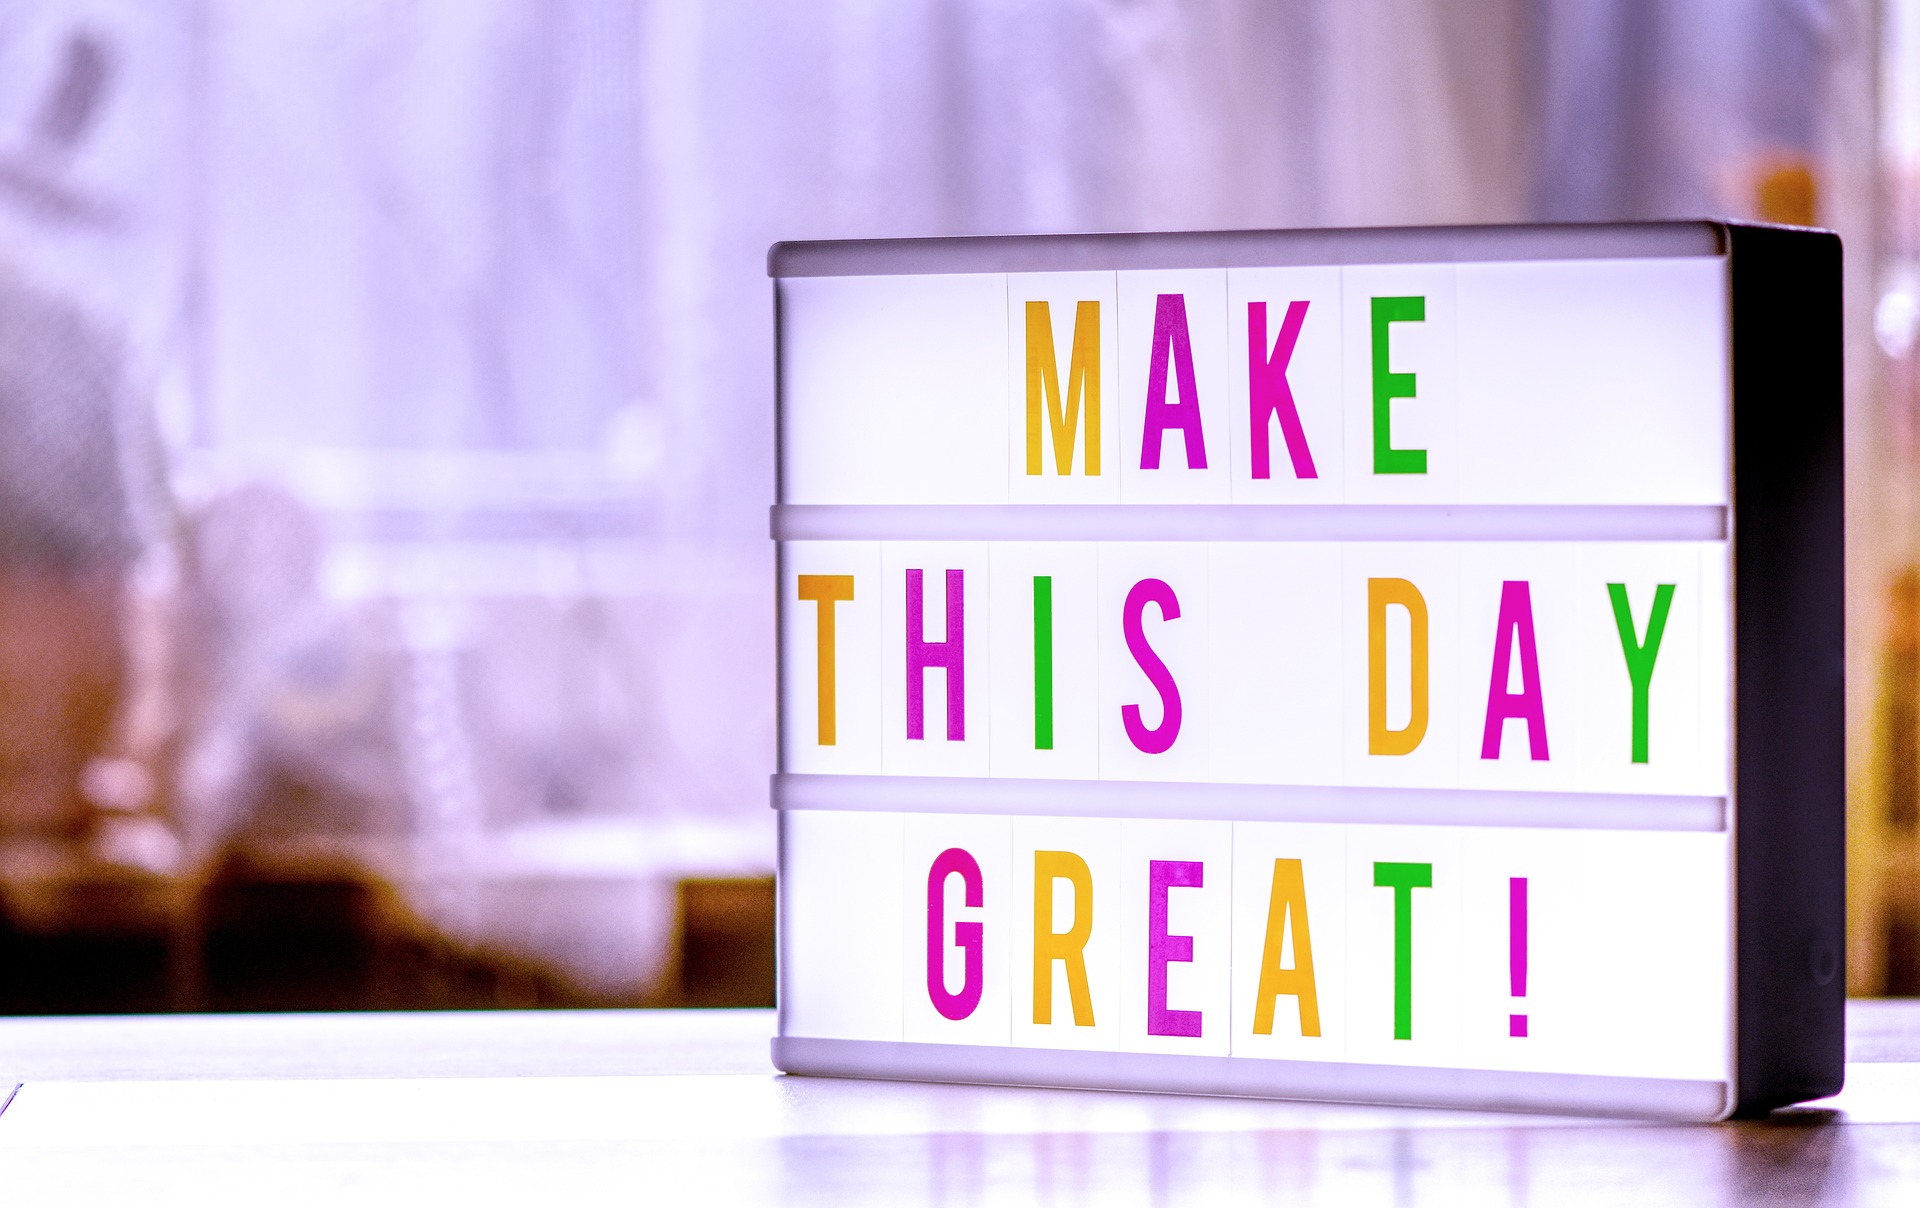 Leuchtschild - Make this day great!